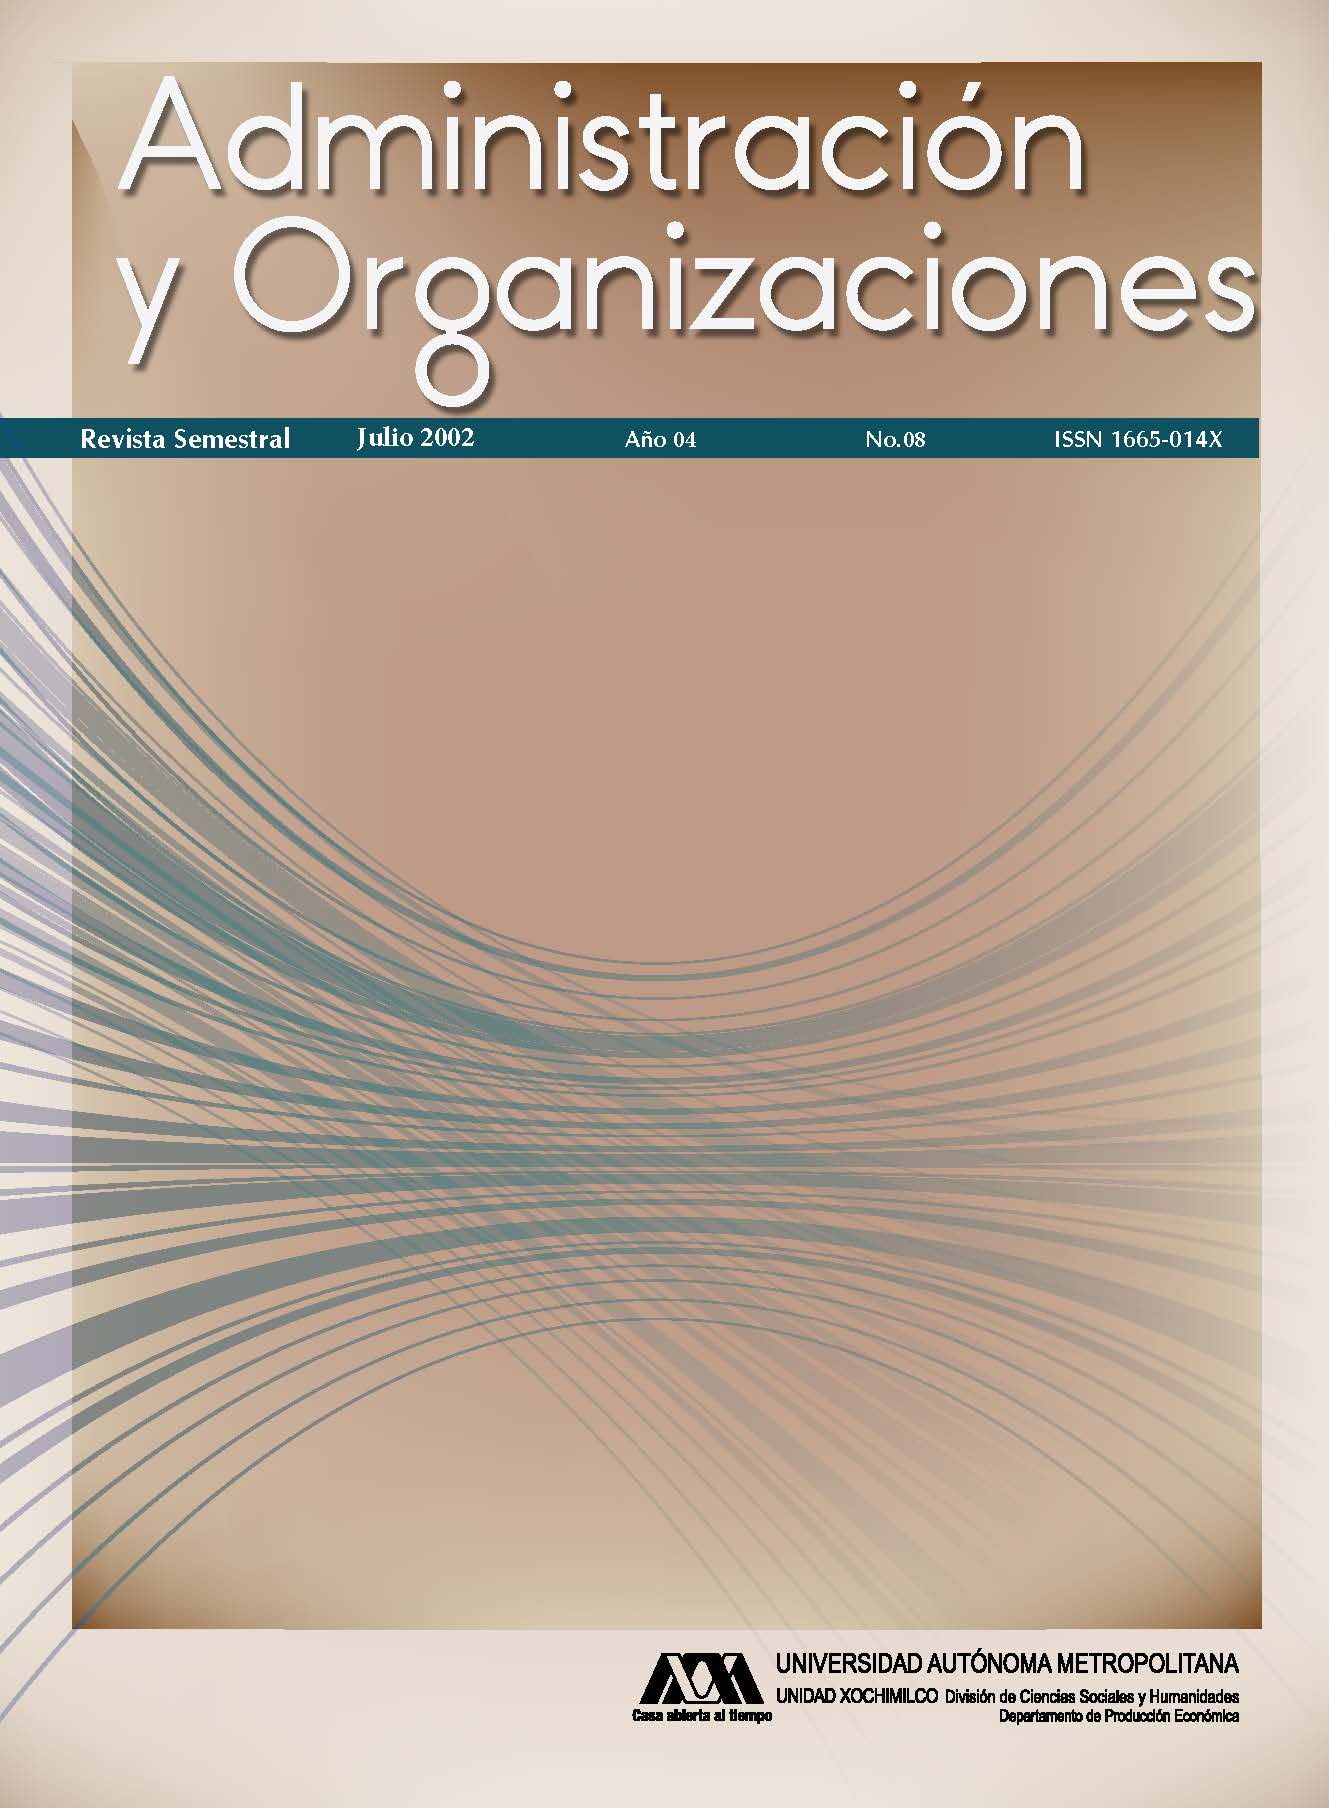 					View Vol. 4 No. 08 (4): Administración y Organizaciones
				